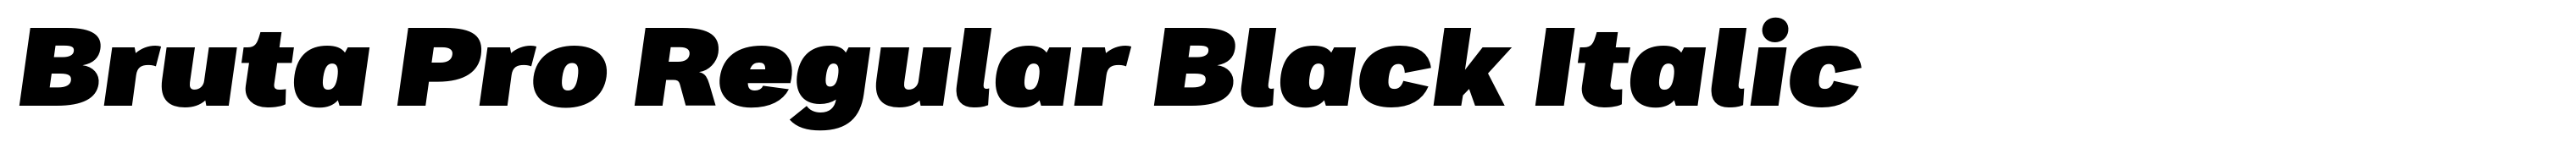 Bruta Pro Regular Black Italic